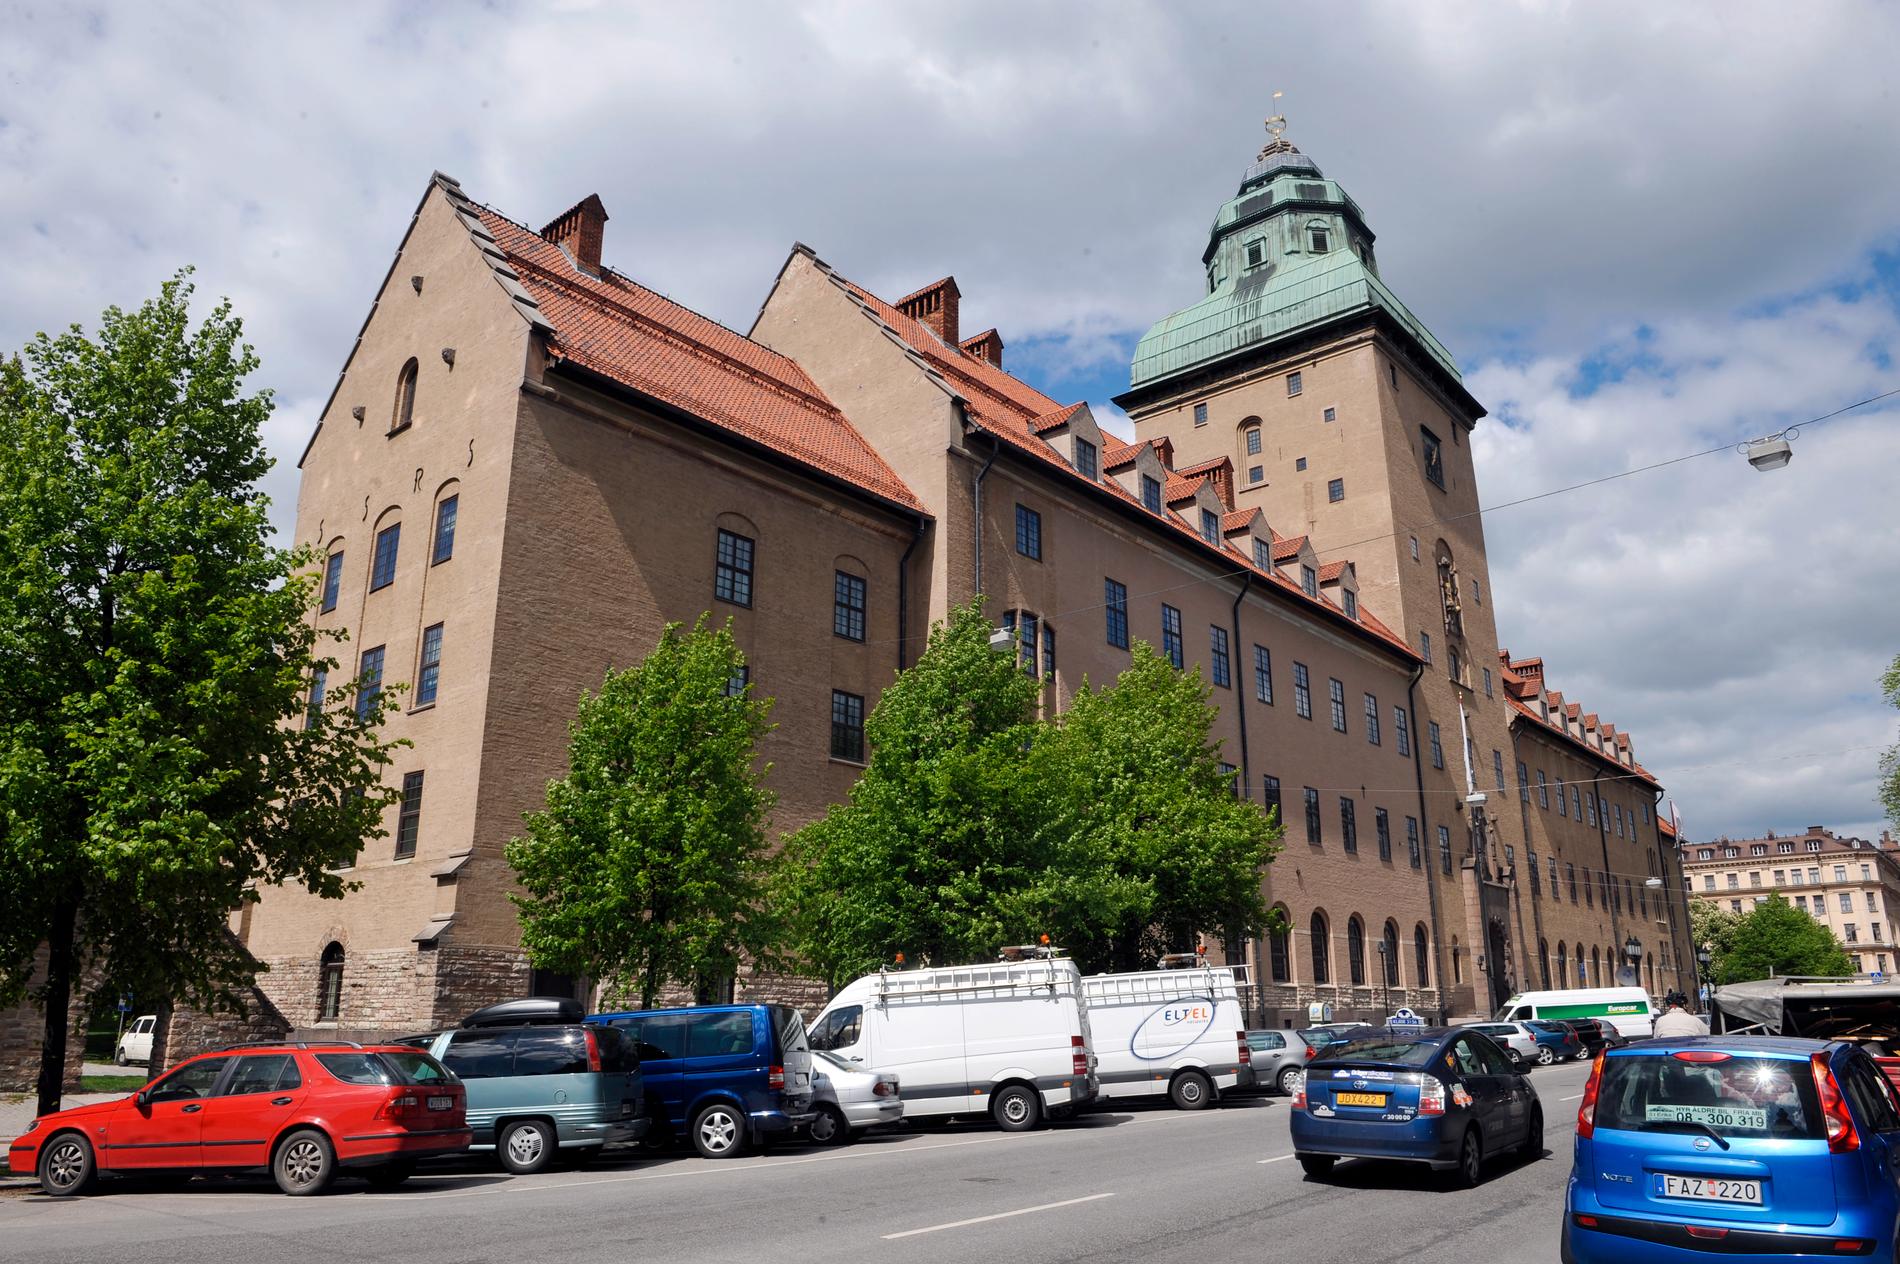 En polis i Stockholm åtalas vid Stockholms tingsrätt för att under ett ingripande ha tvingat en oskyldig tonåring att ta av sig naken